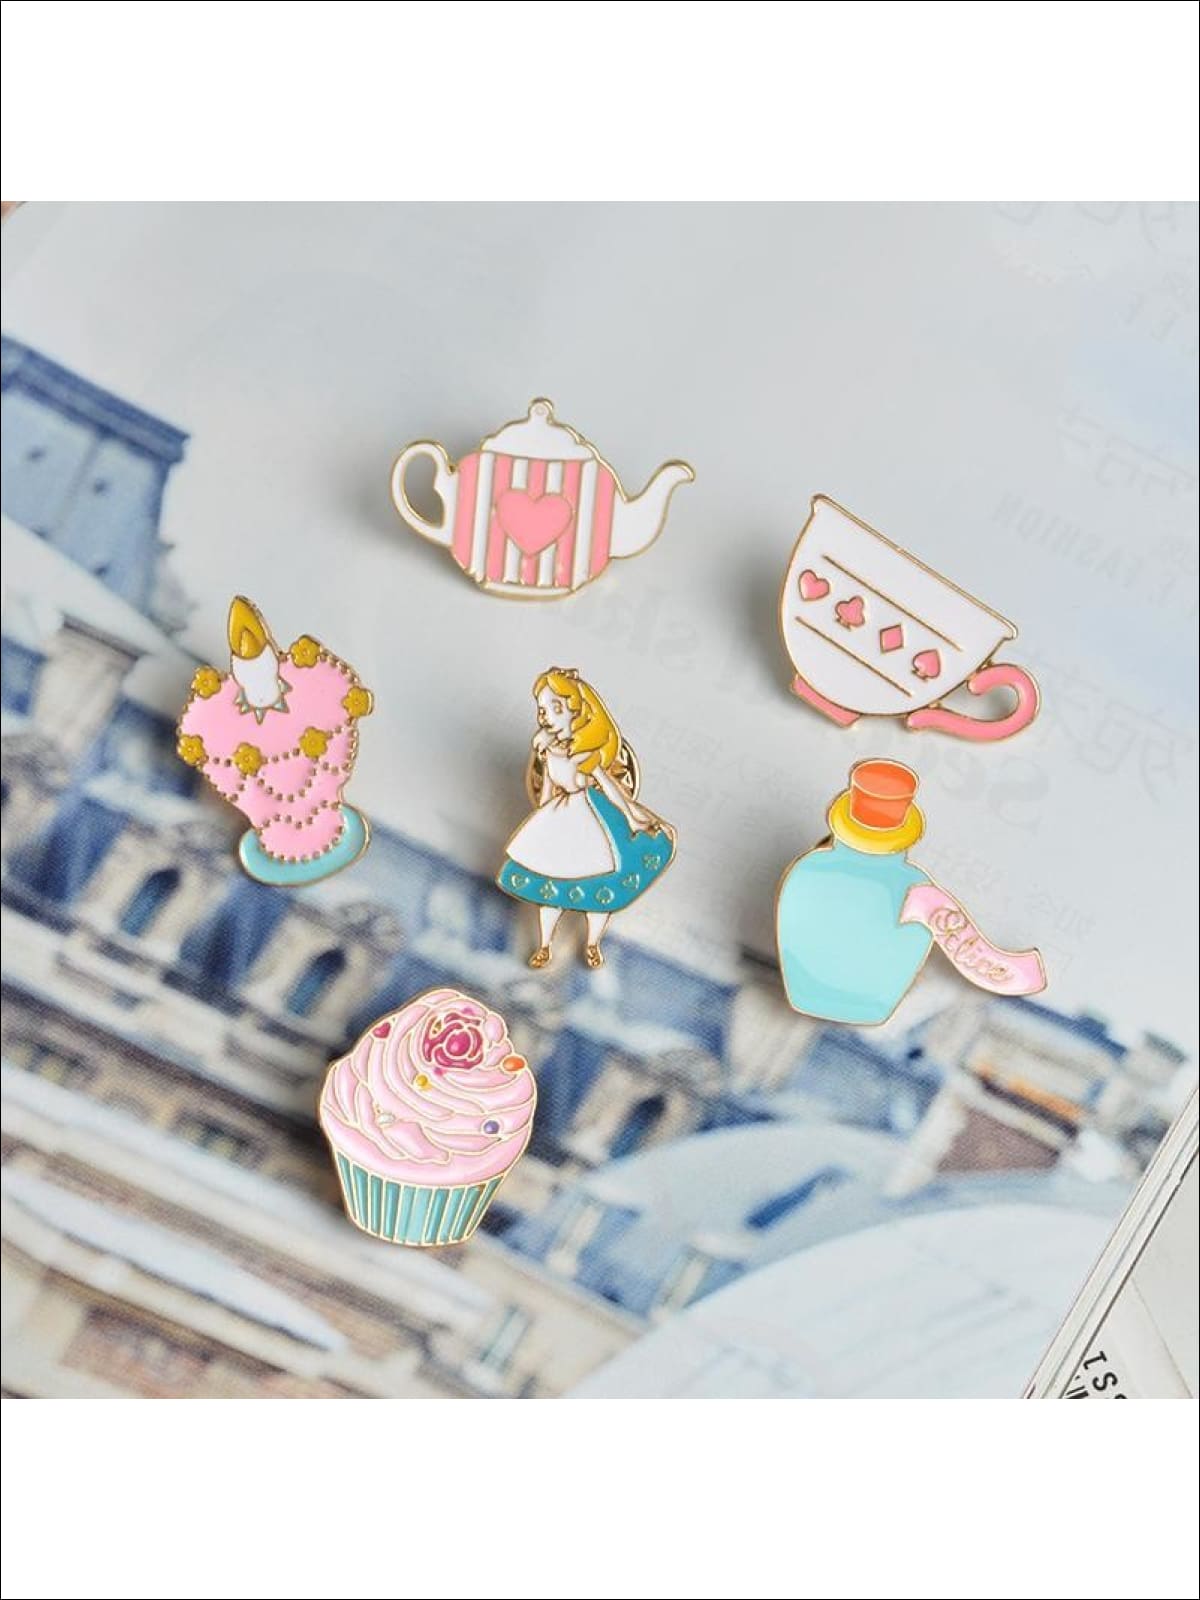 Alice in Wonderland Pins - Pins